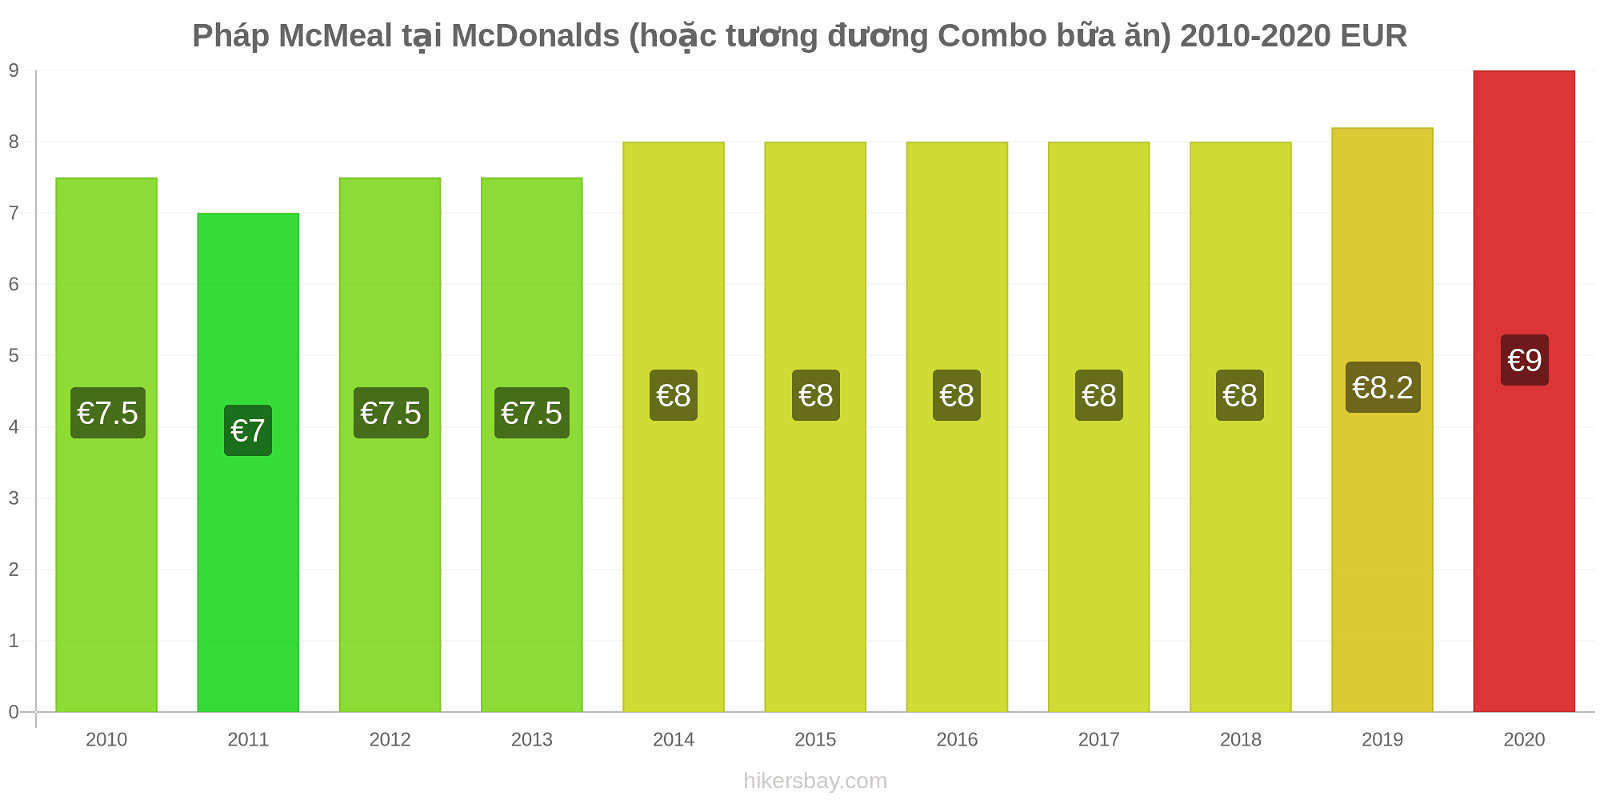 Pháp thay đổi giá McMeal tại McDonalds (hoặc tương đương Combo bữa ăn) hikersbay.com